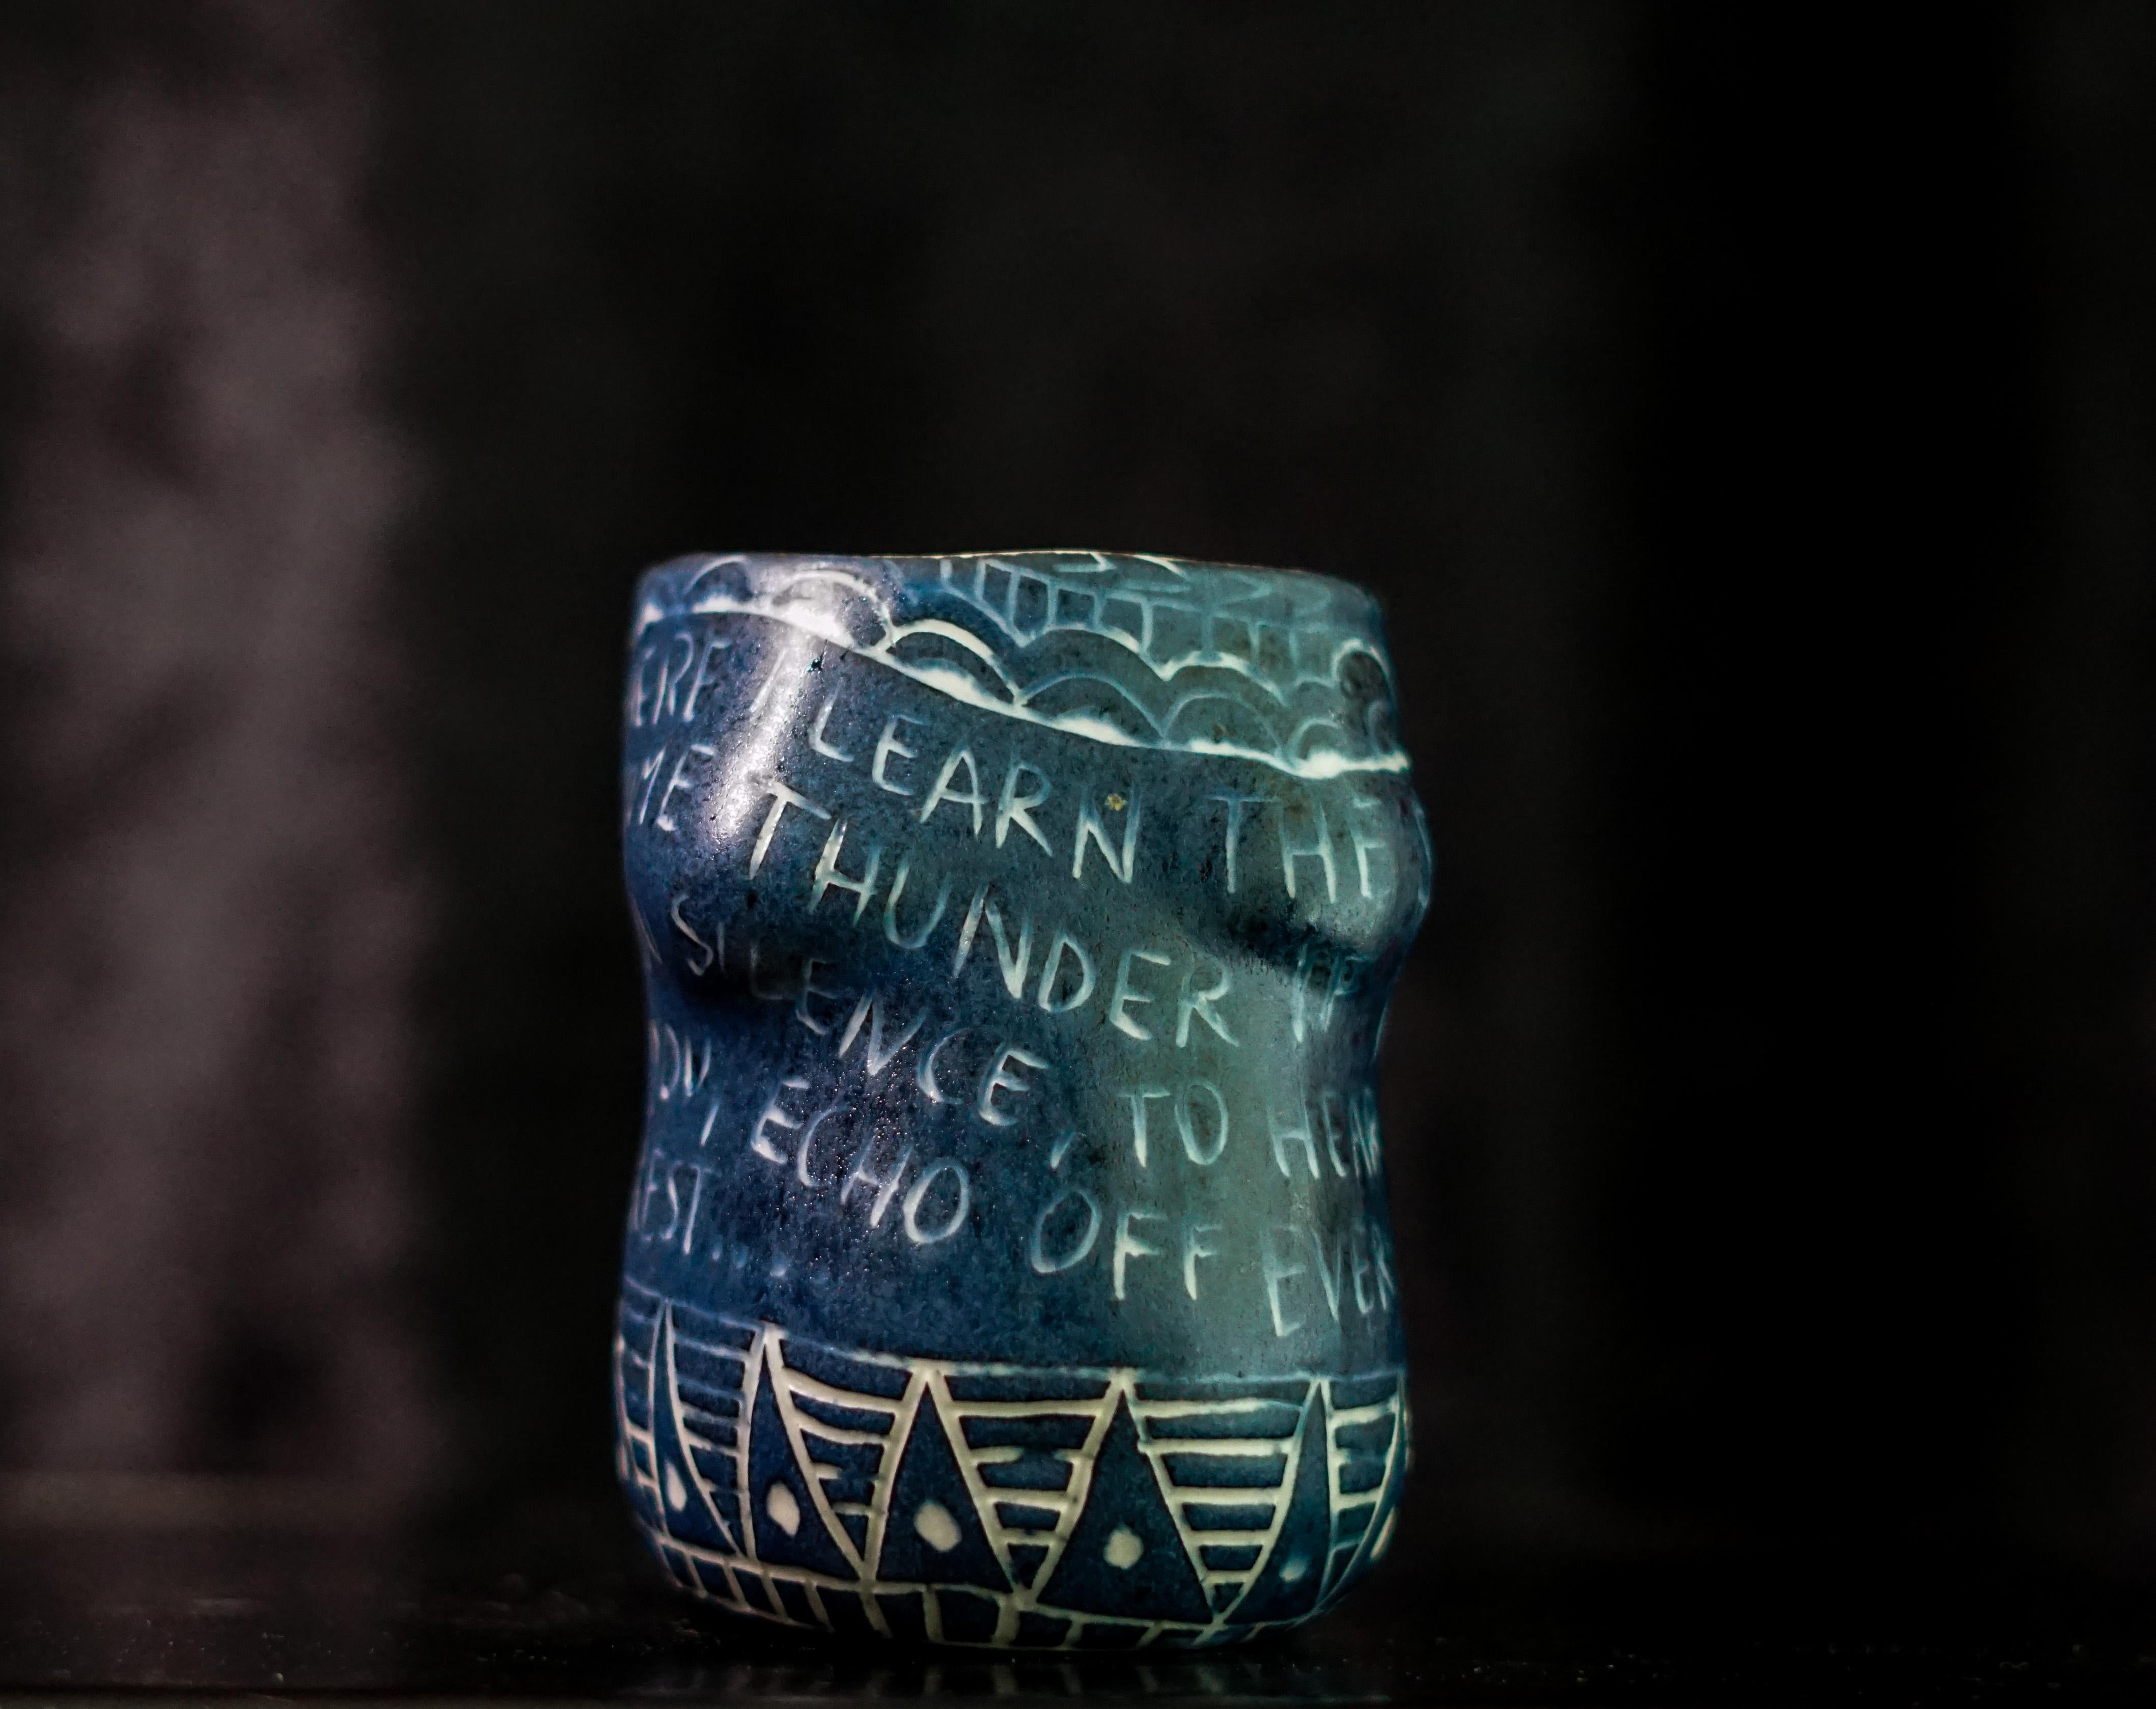 Ici, j'apprends... Tasse en porcelaine avec détails en sgraffite de l'artiste - Sculpture de Alex Hodge